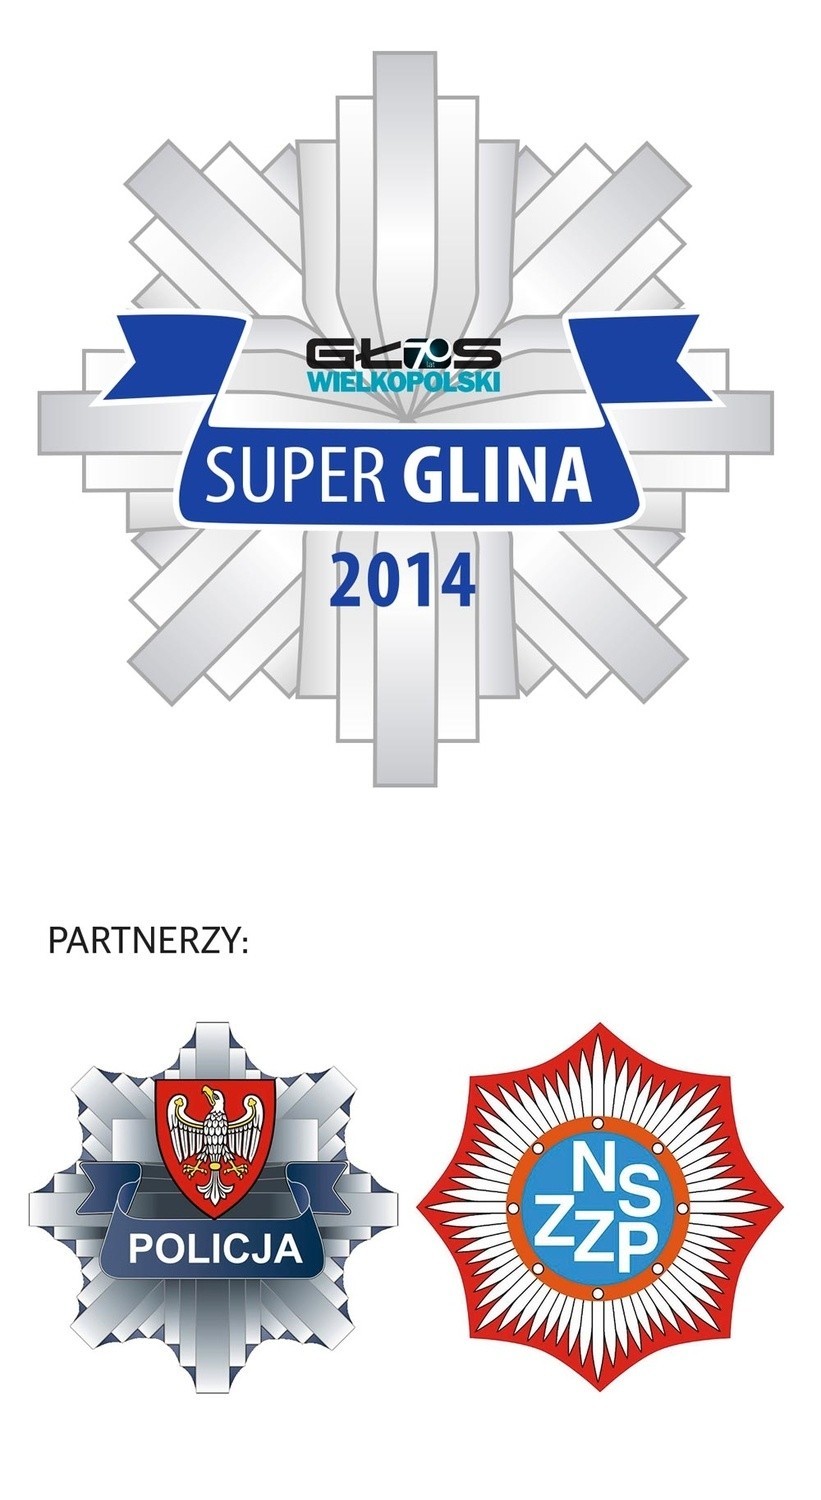 Poznaj wszystkich policjantów z plebiscytu Super Glina 2014